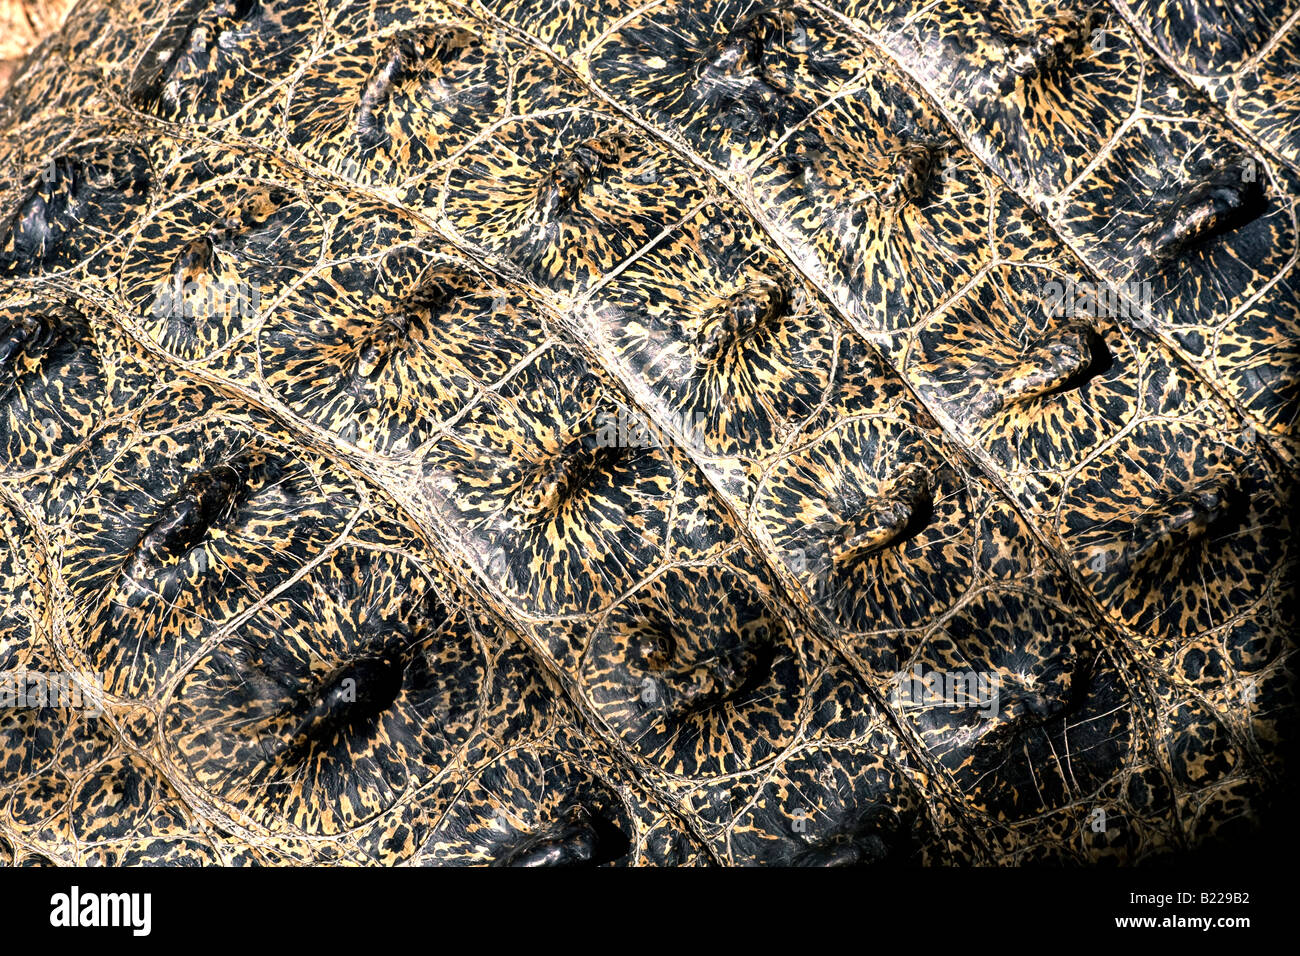 Leistenkrokodil Saltwater Crocodile Crocodylus porosus skin detail Rainforest Habitat Wildlife Sanctuary Stock Photo